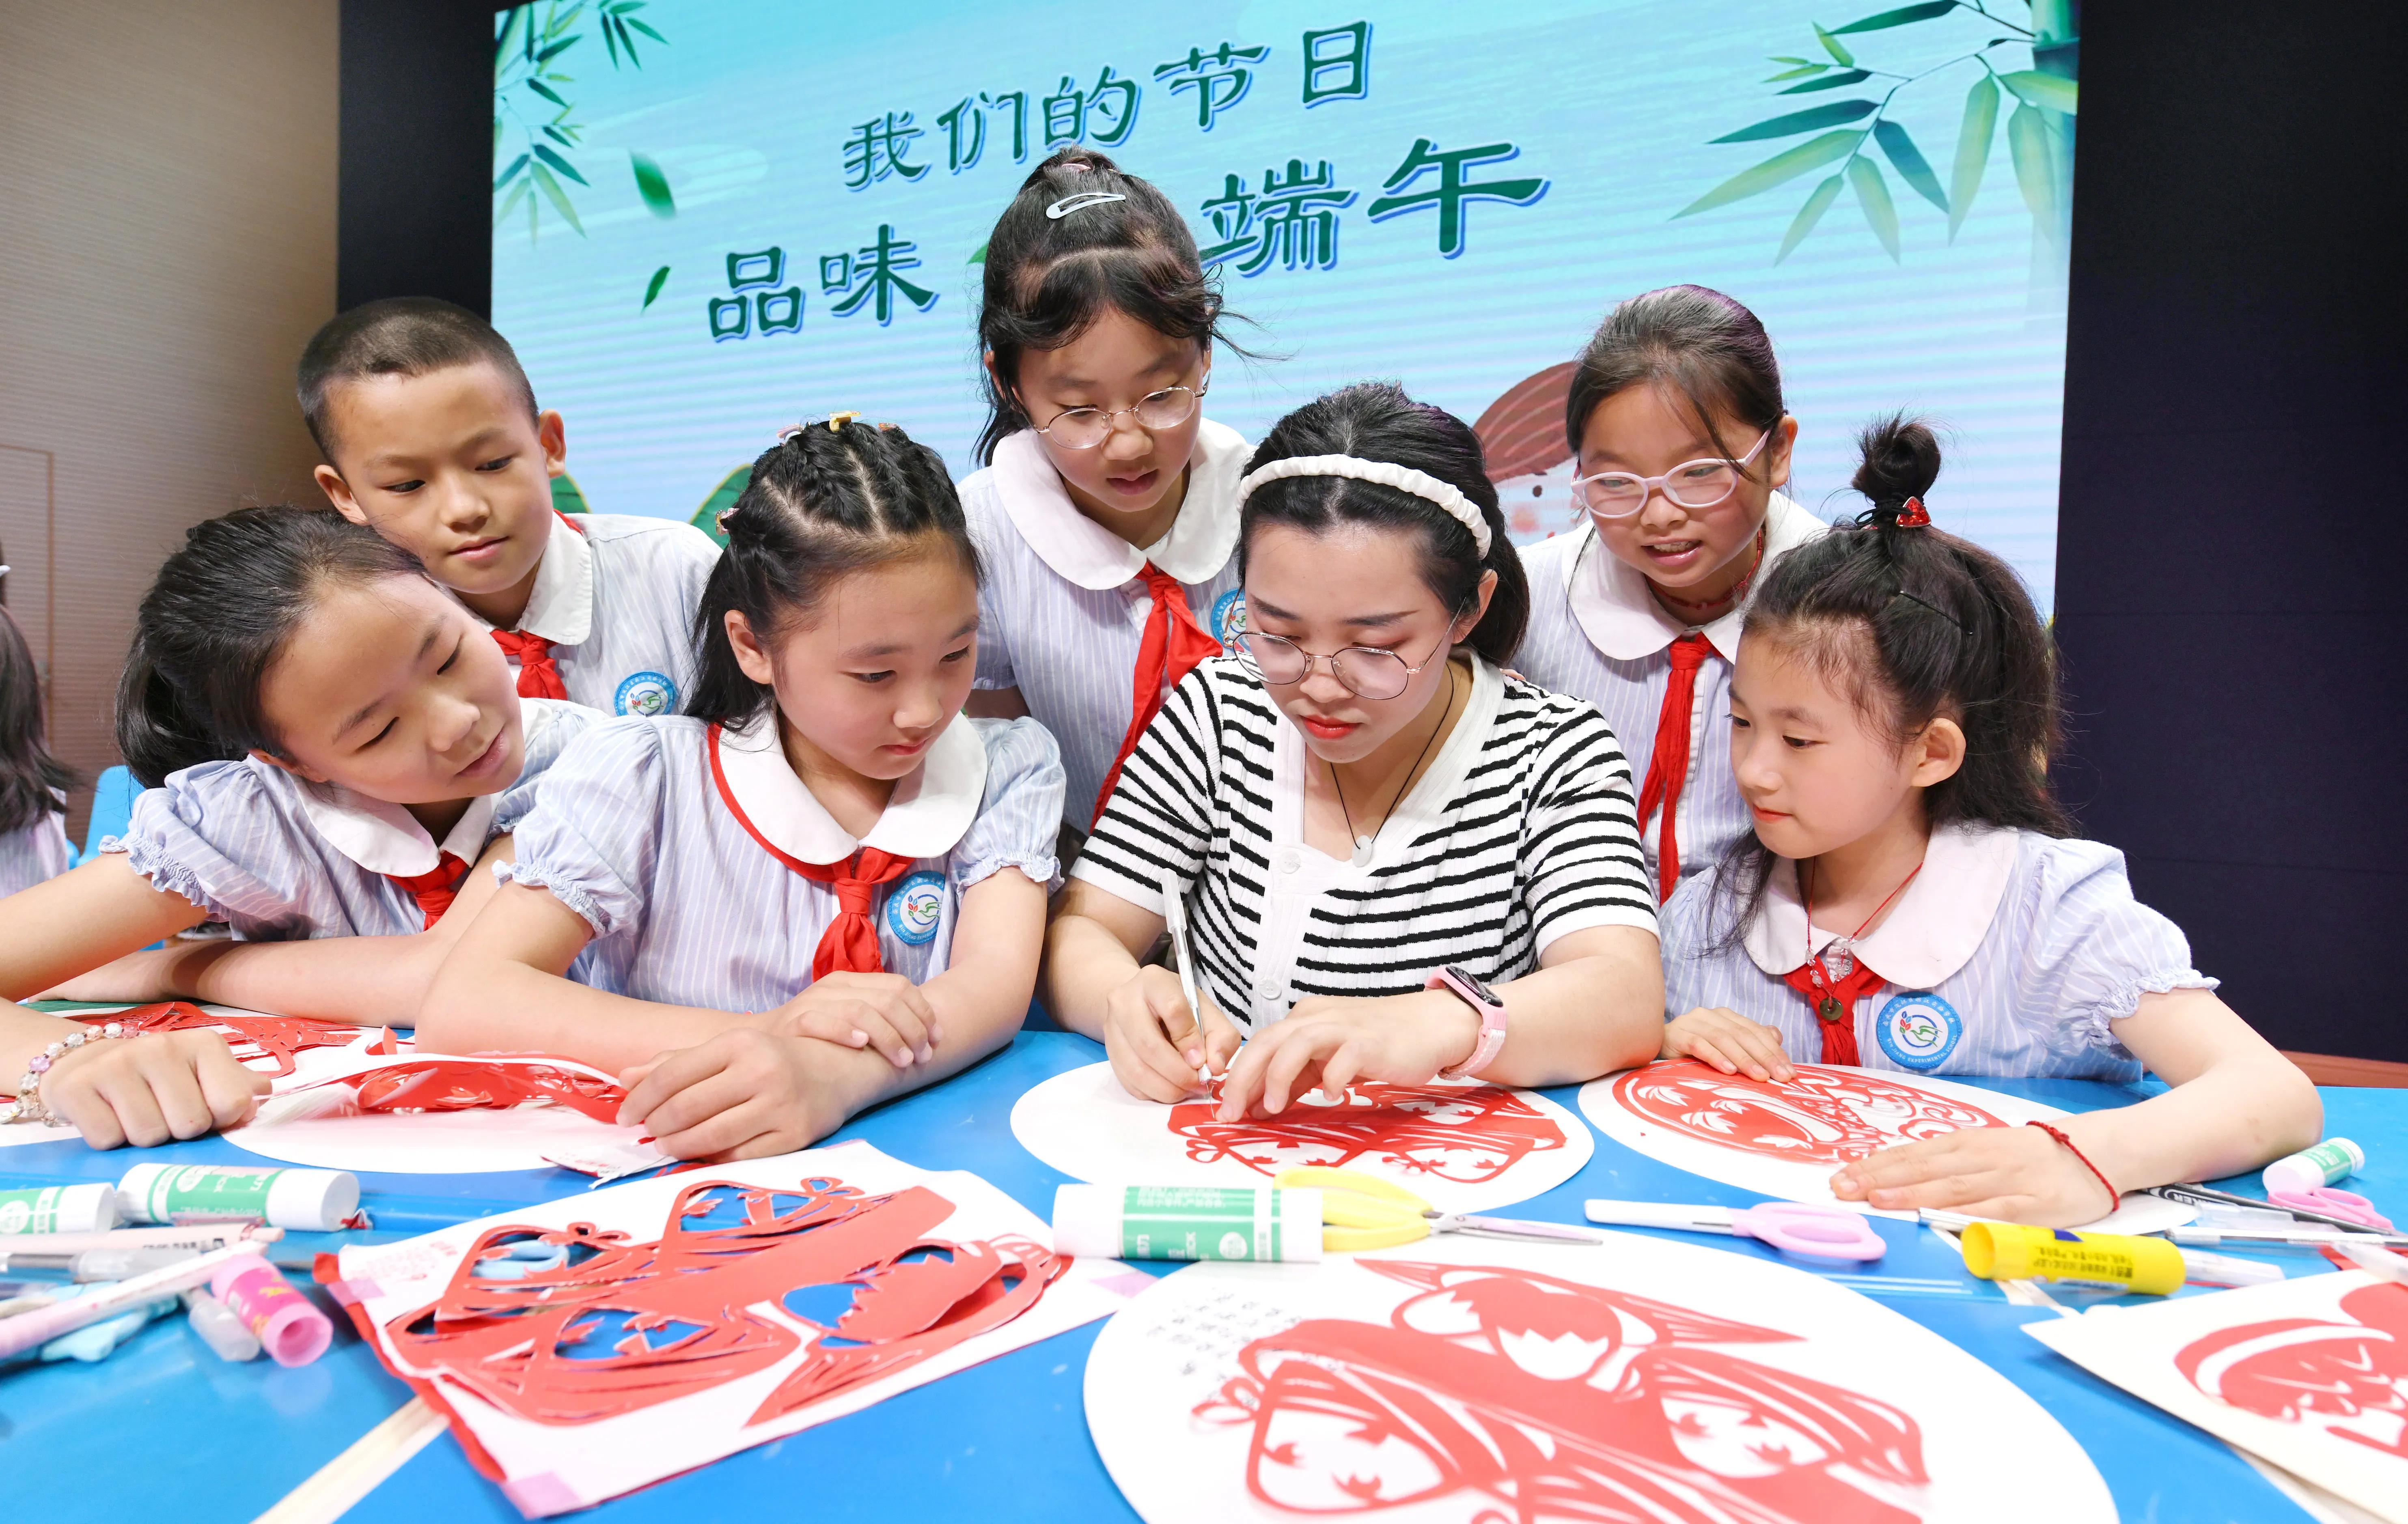 Аньцин в провинции Аньхой: дети, оставшиеся без родительского надзора, знакомятся с народными обычаями и культурой праздника Дуаньу